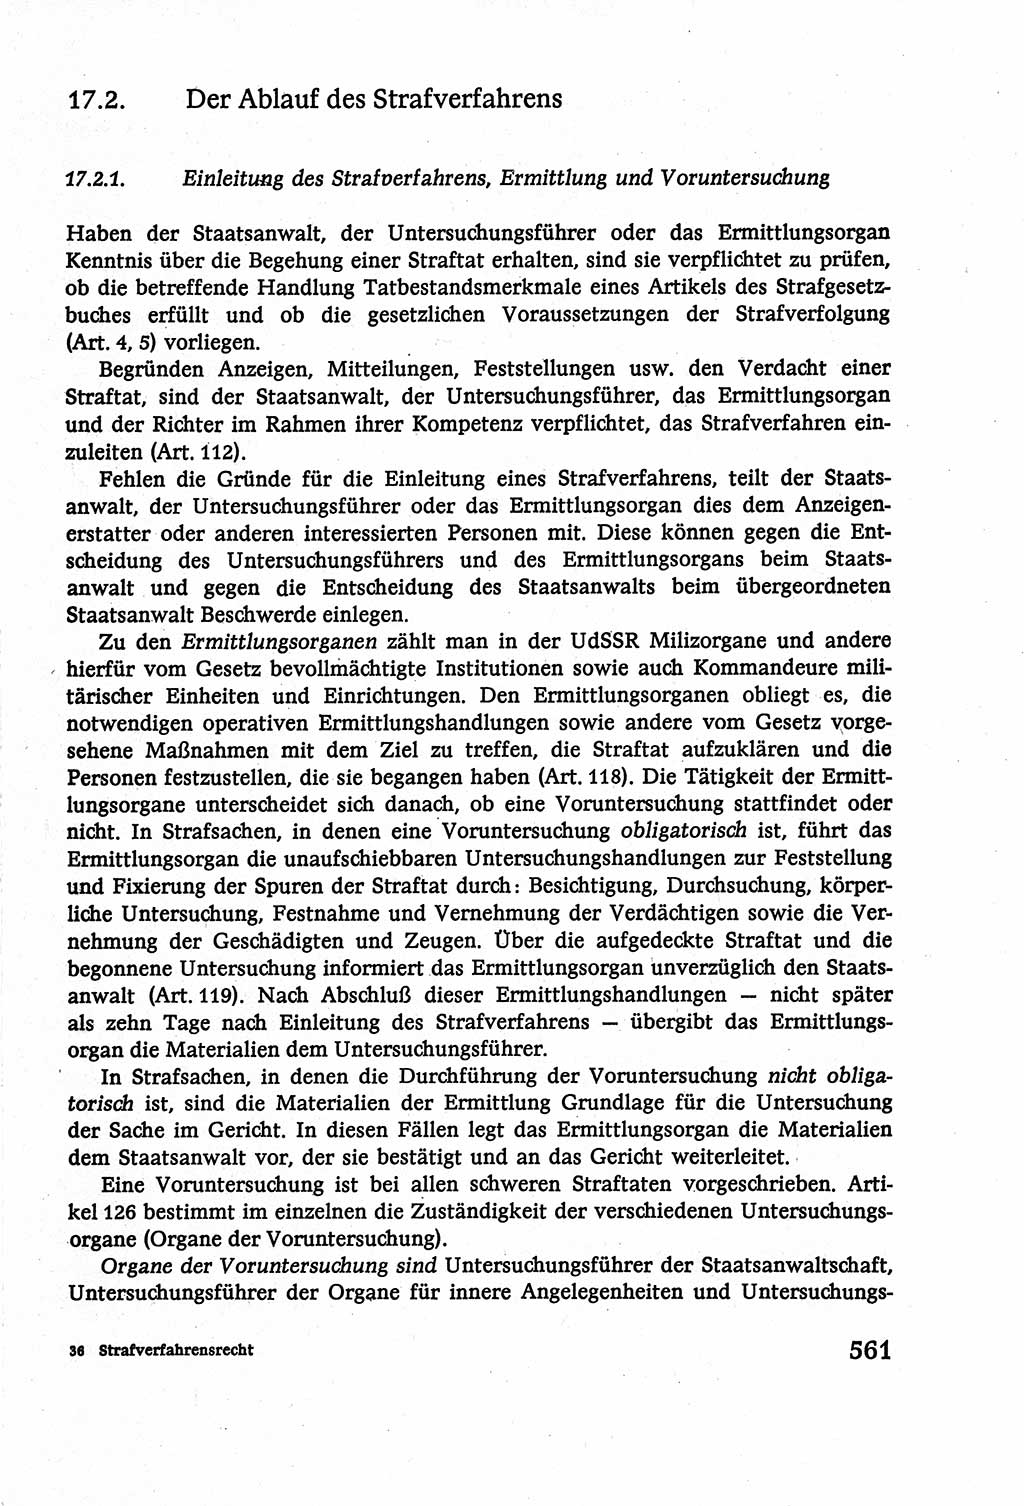 Strafverfahrensrecht [Deutsche Demokratische Republik (DDR)], Lehrbuch 1977, Seite 561 (Strafverf.-R. DDR Lb. 1977, S. 561)